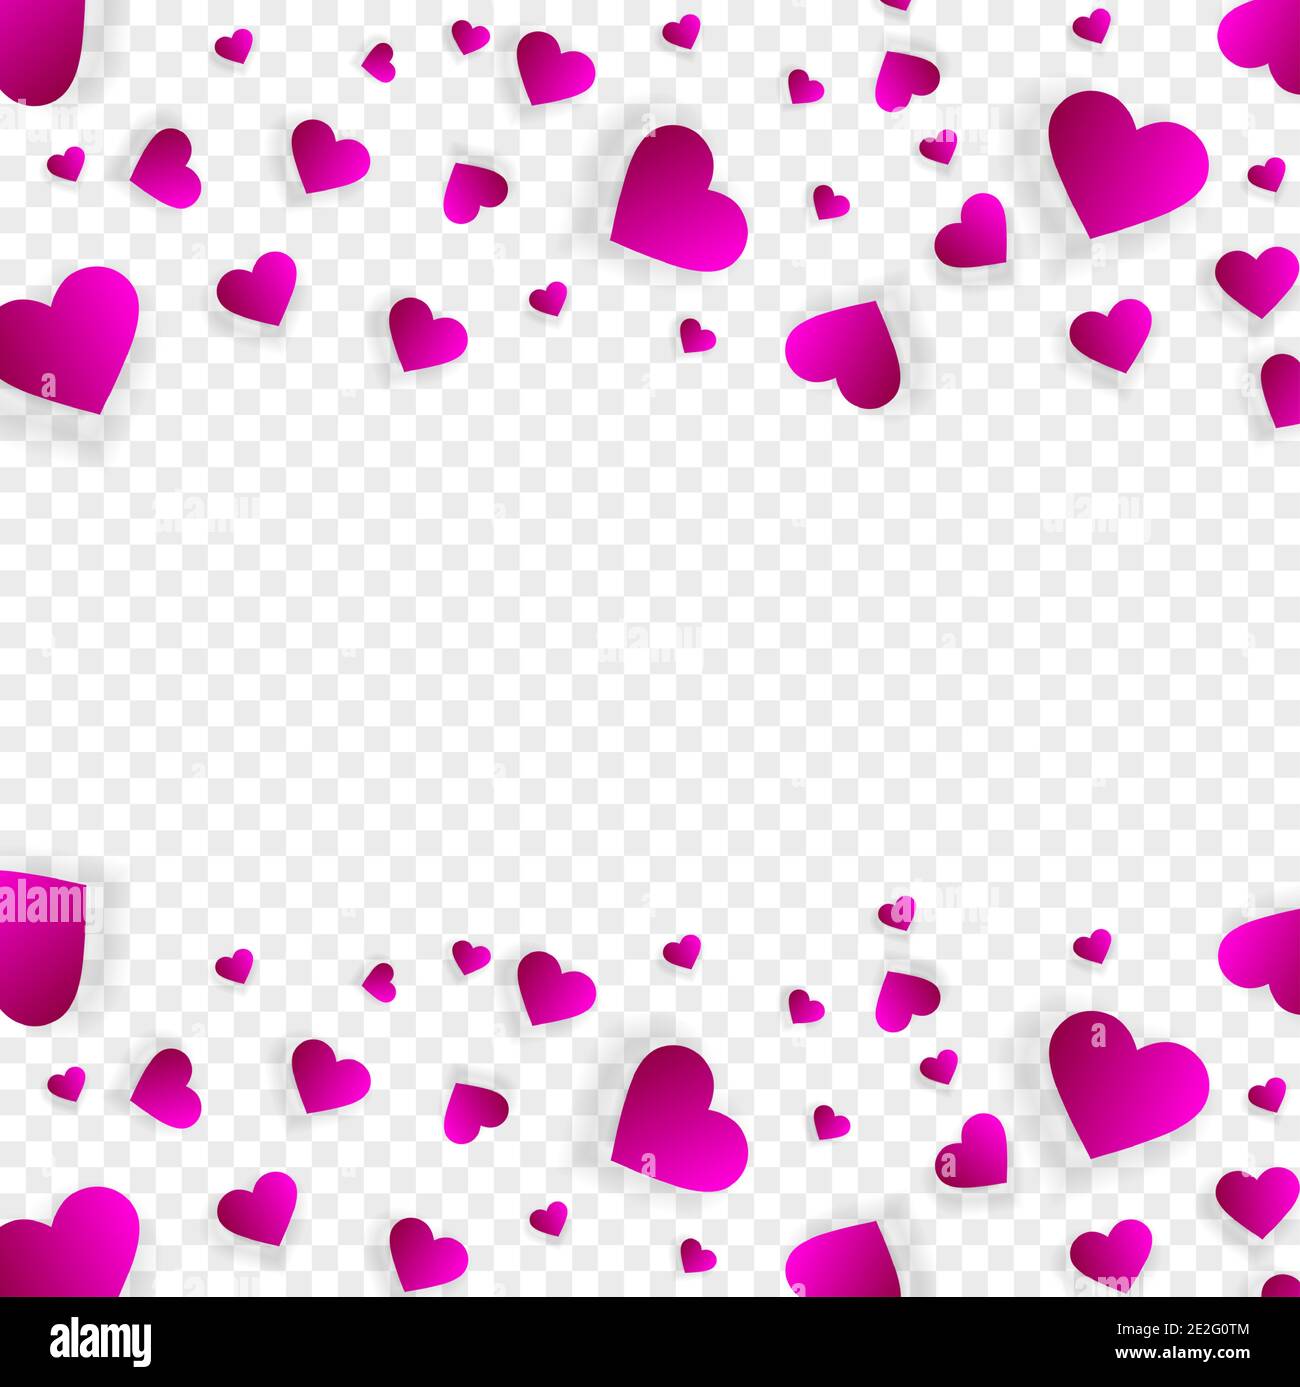 Heart frame vector banner, border, love background Stock Vector Image & Art  - Alamy